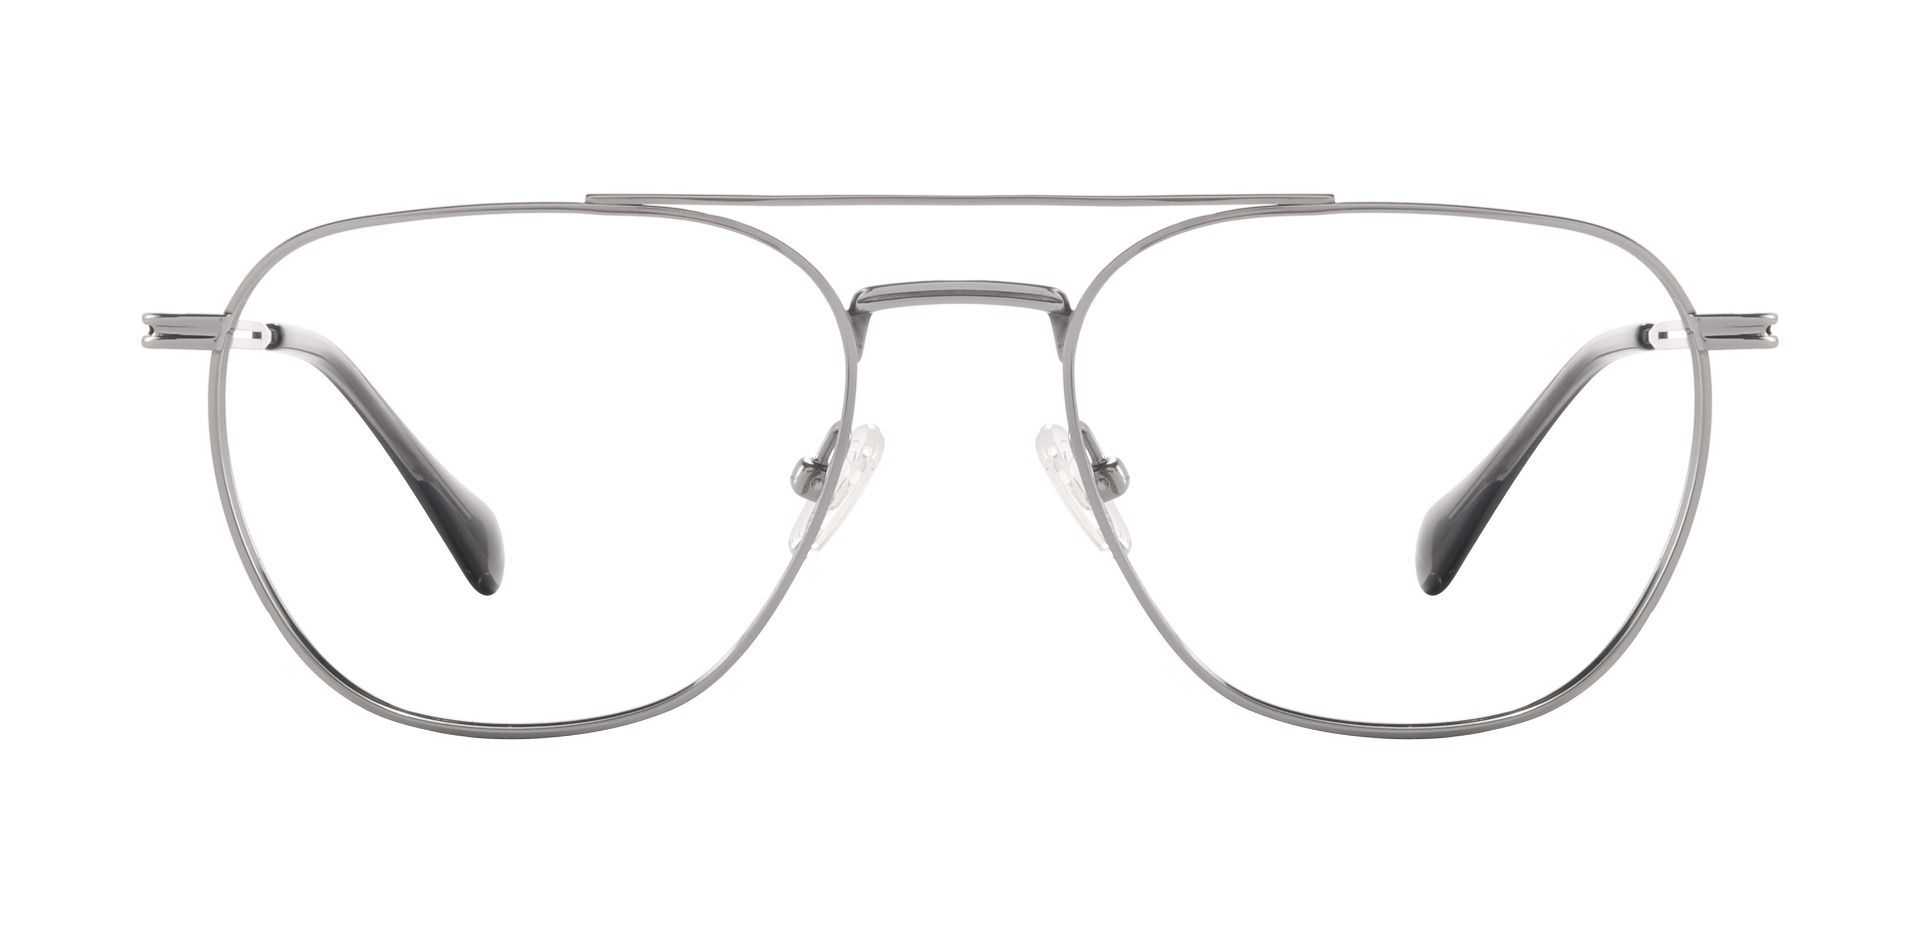 Franz Aviator Prescription Glasses - Black | Men's Eyeglasses | Payne ...